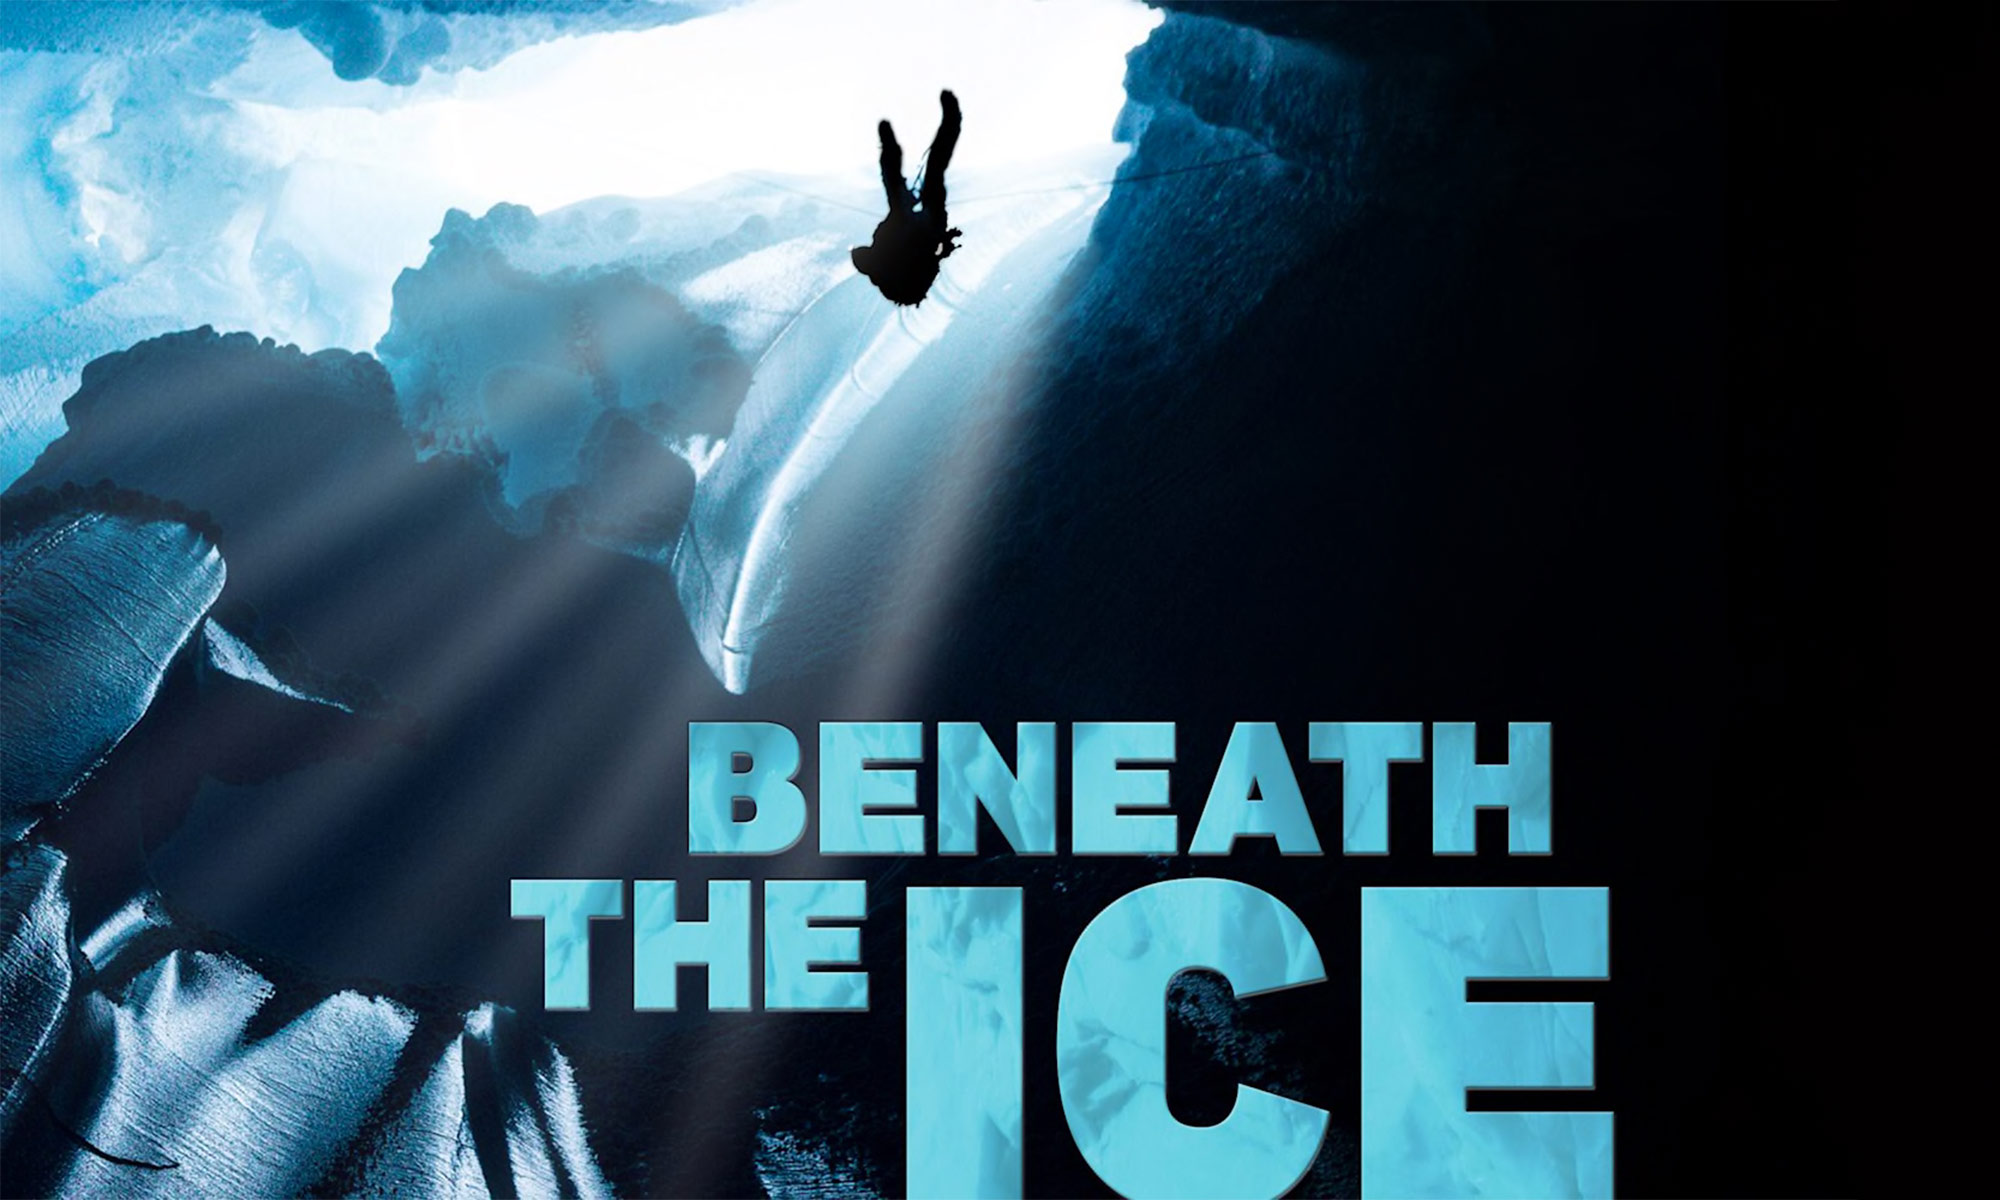 Beneath the ice